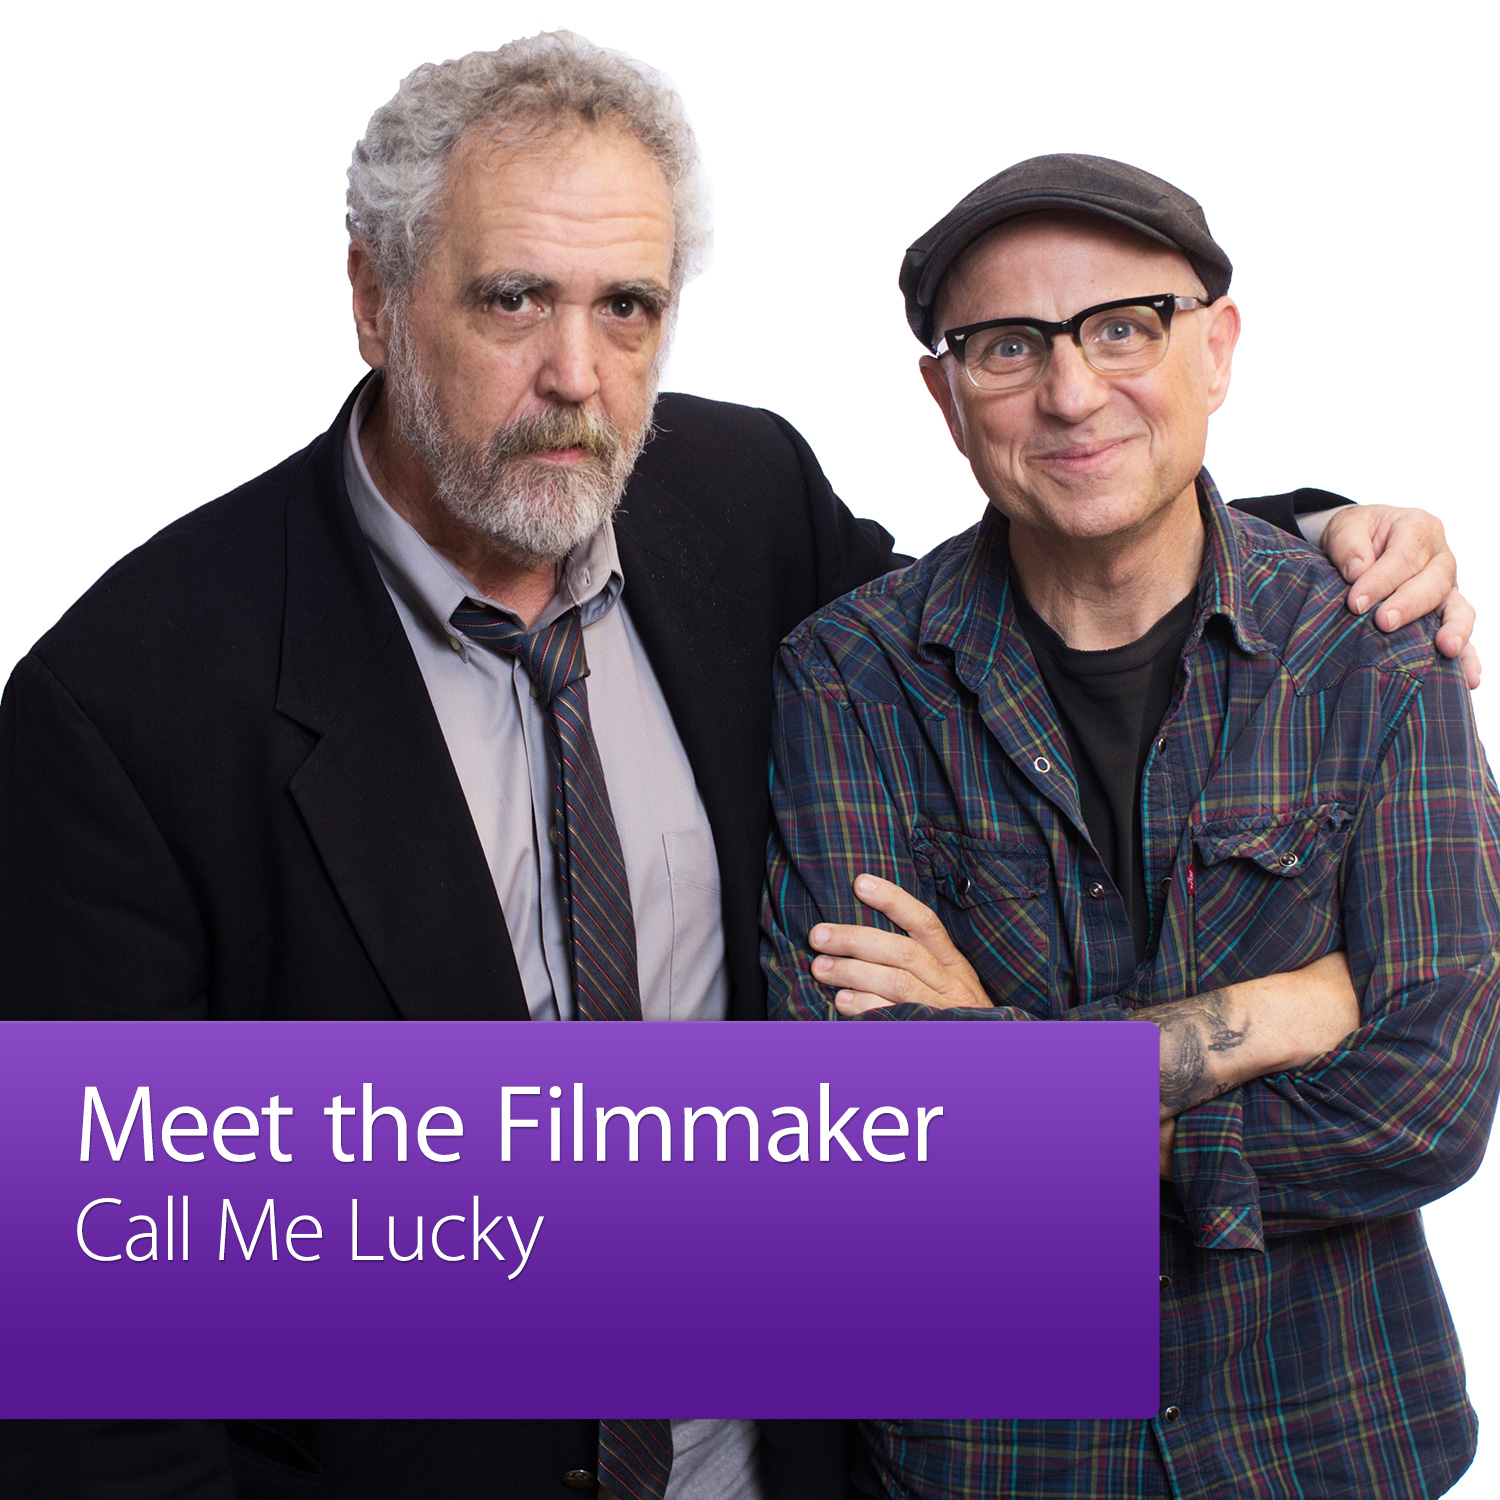 Call Me Lucky: Meet the Filmmaker